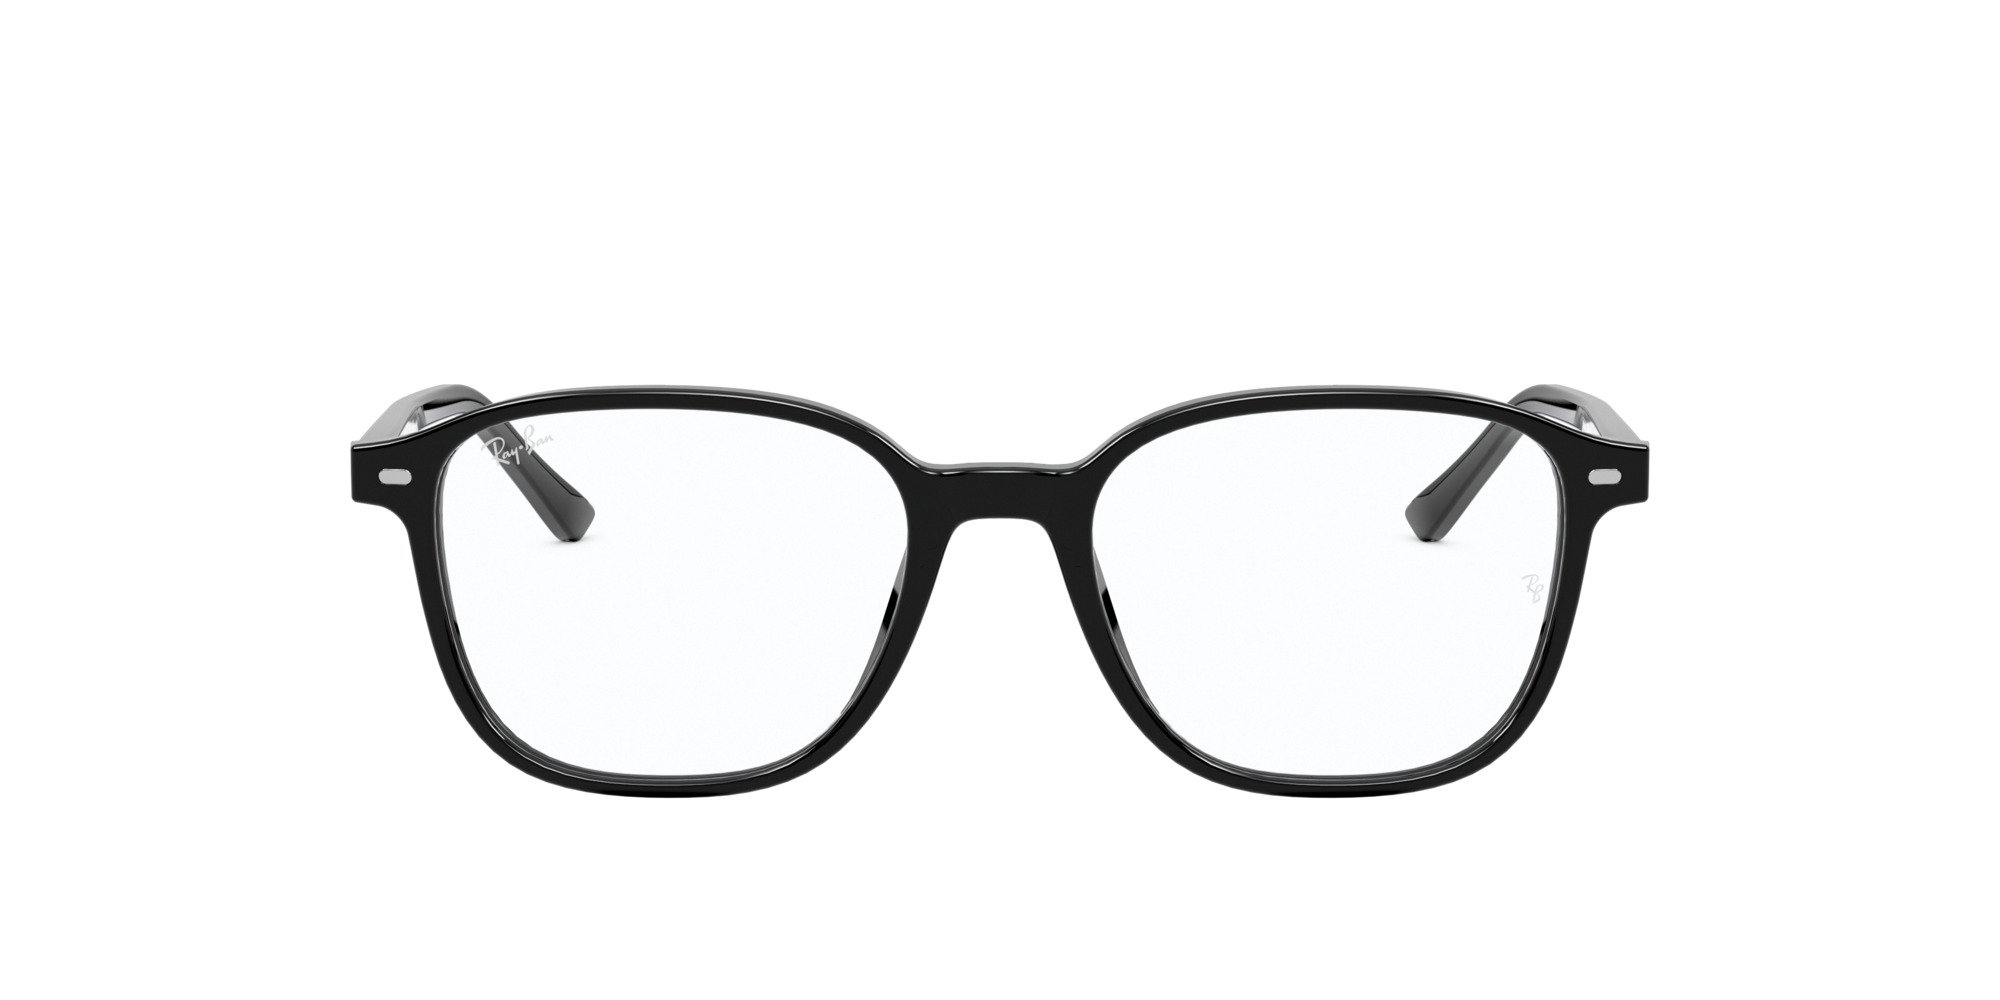 Das Bild zeigt die Korrektionsbrille RX5393 2000 von der Marke Ray Ban in schwarz.